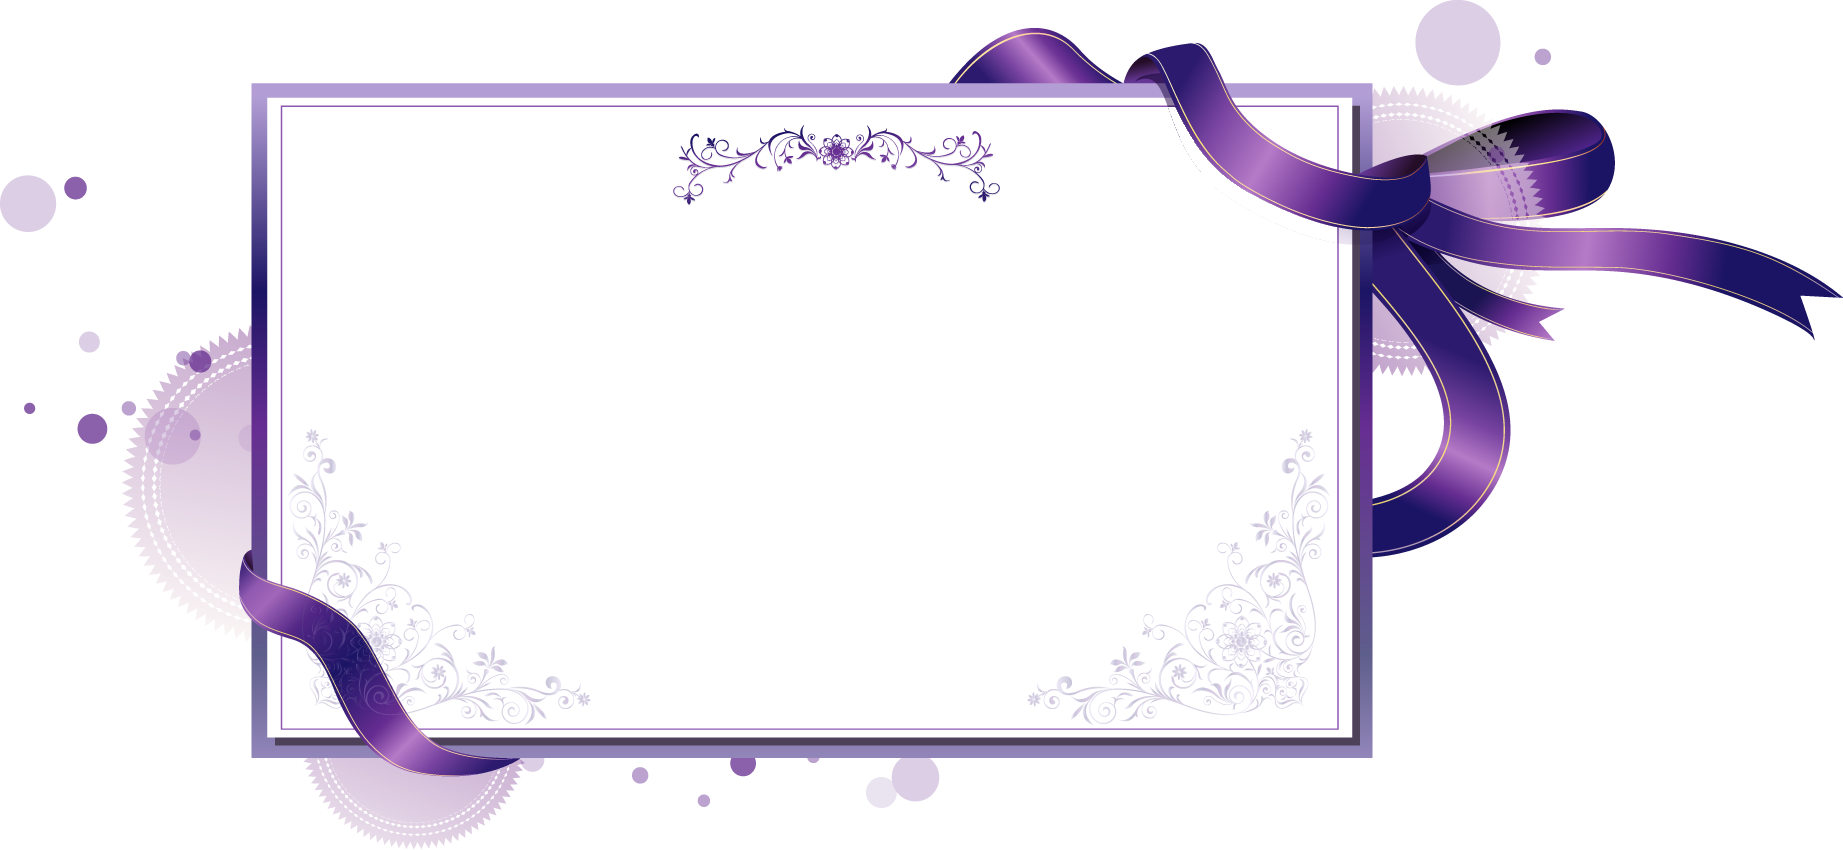 紫色の花のイラスト フリー素材 No 326 紫 リボン カード